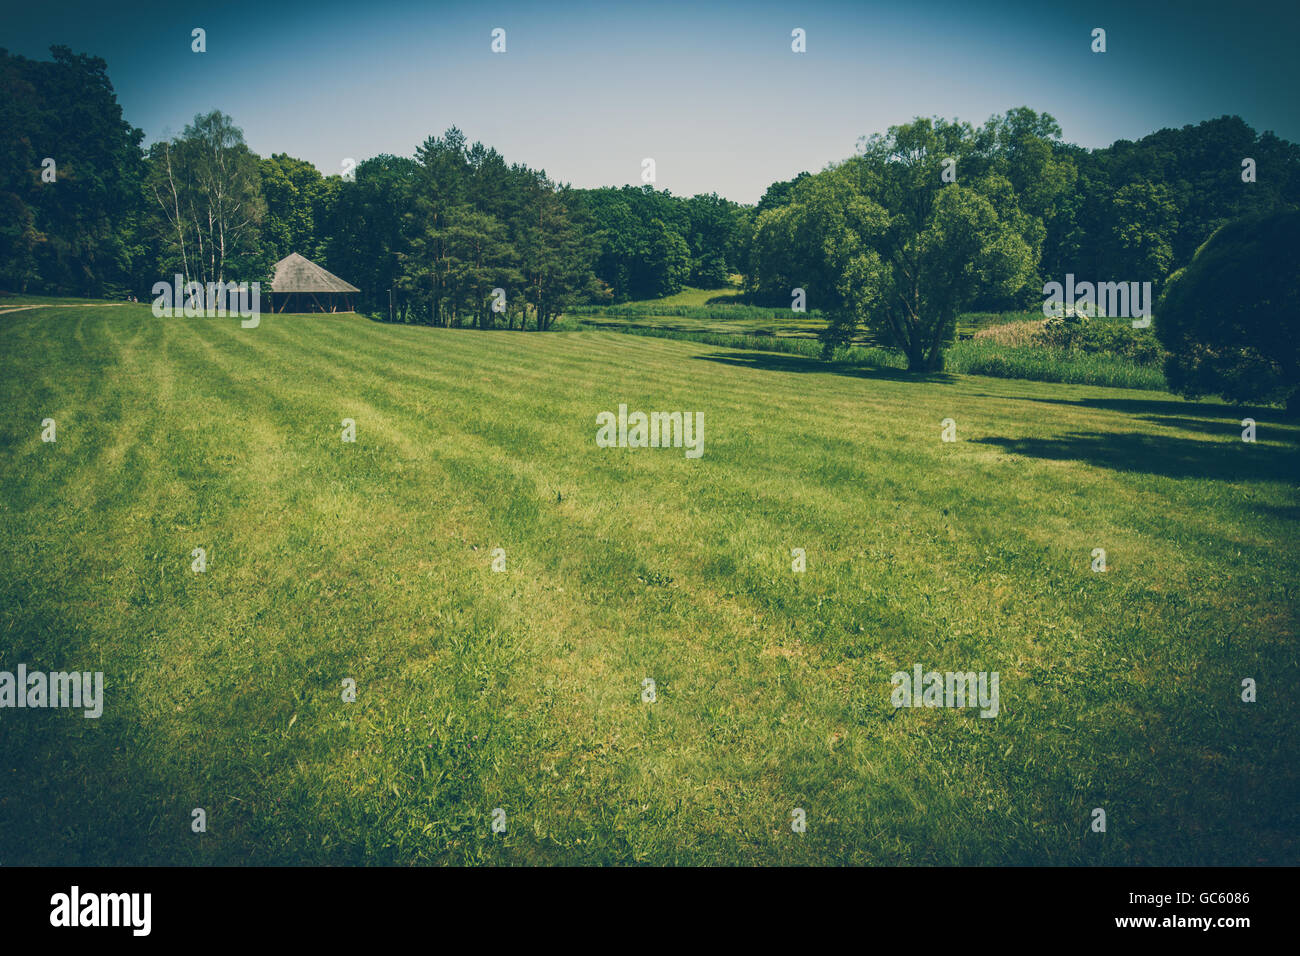 Leeres Feld Gras mit Bäumen und strohgedeckte Hütte am Horizont. Retro-stilisierte Foto. Stockfoto